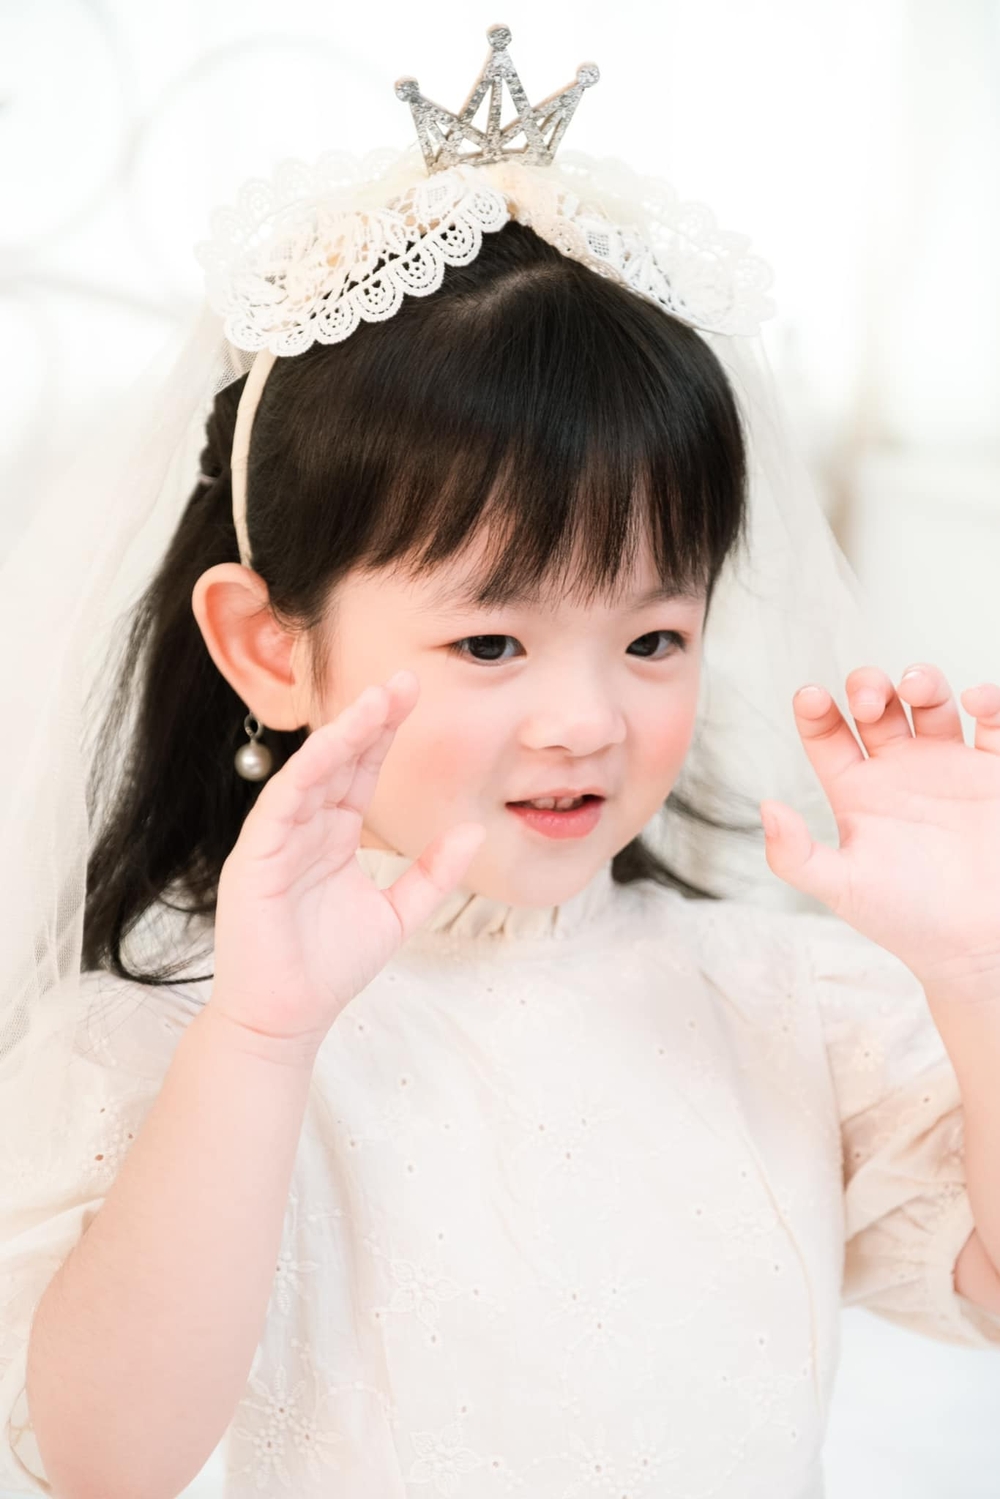 Con gái Trương Mỹ Nhân - Phí Ngọc Hưng được khen như tiểu công chúa, mới 3 tuổi đã bộc lộ tính cách đáng khen - Ảnh 3.